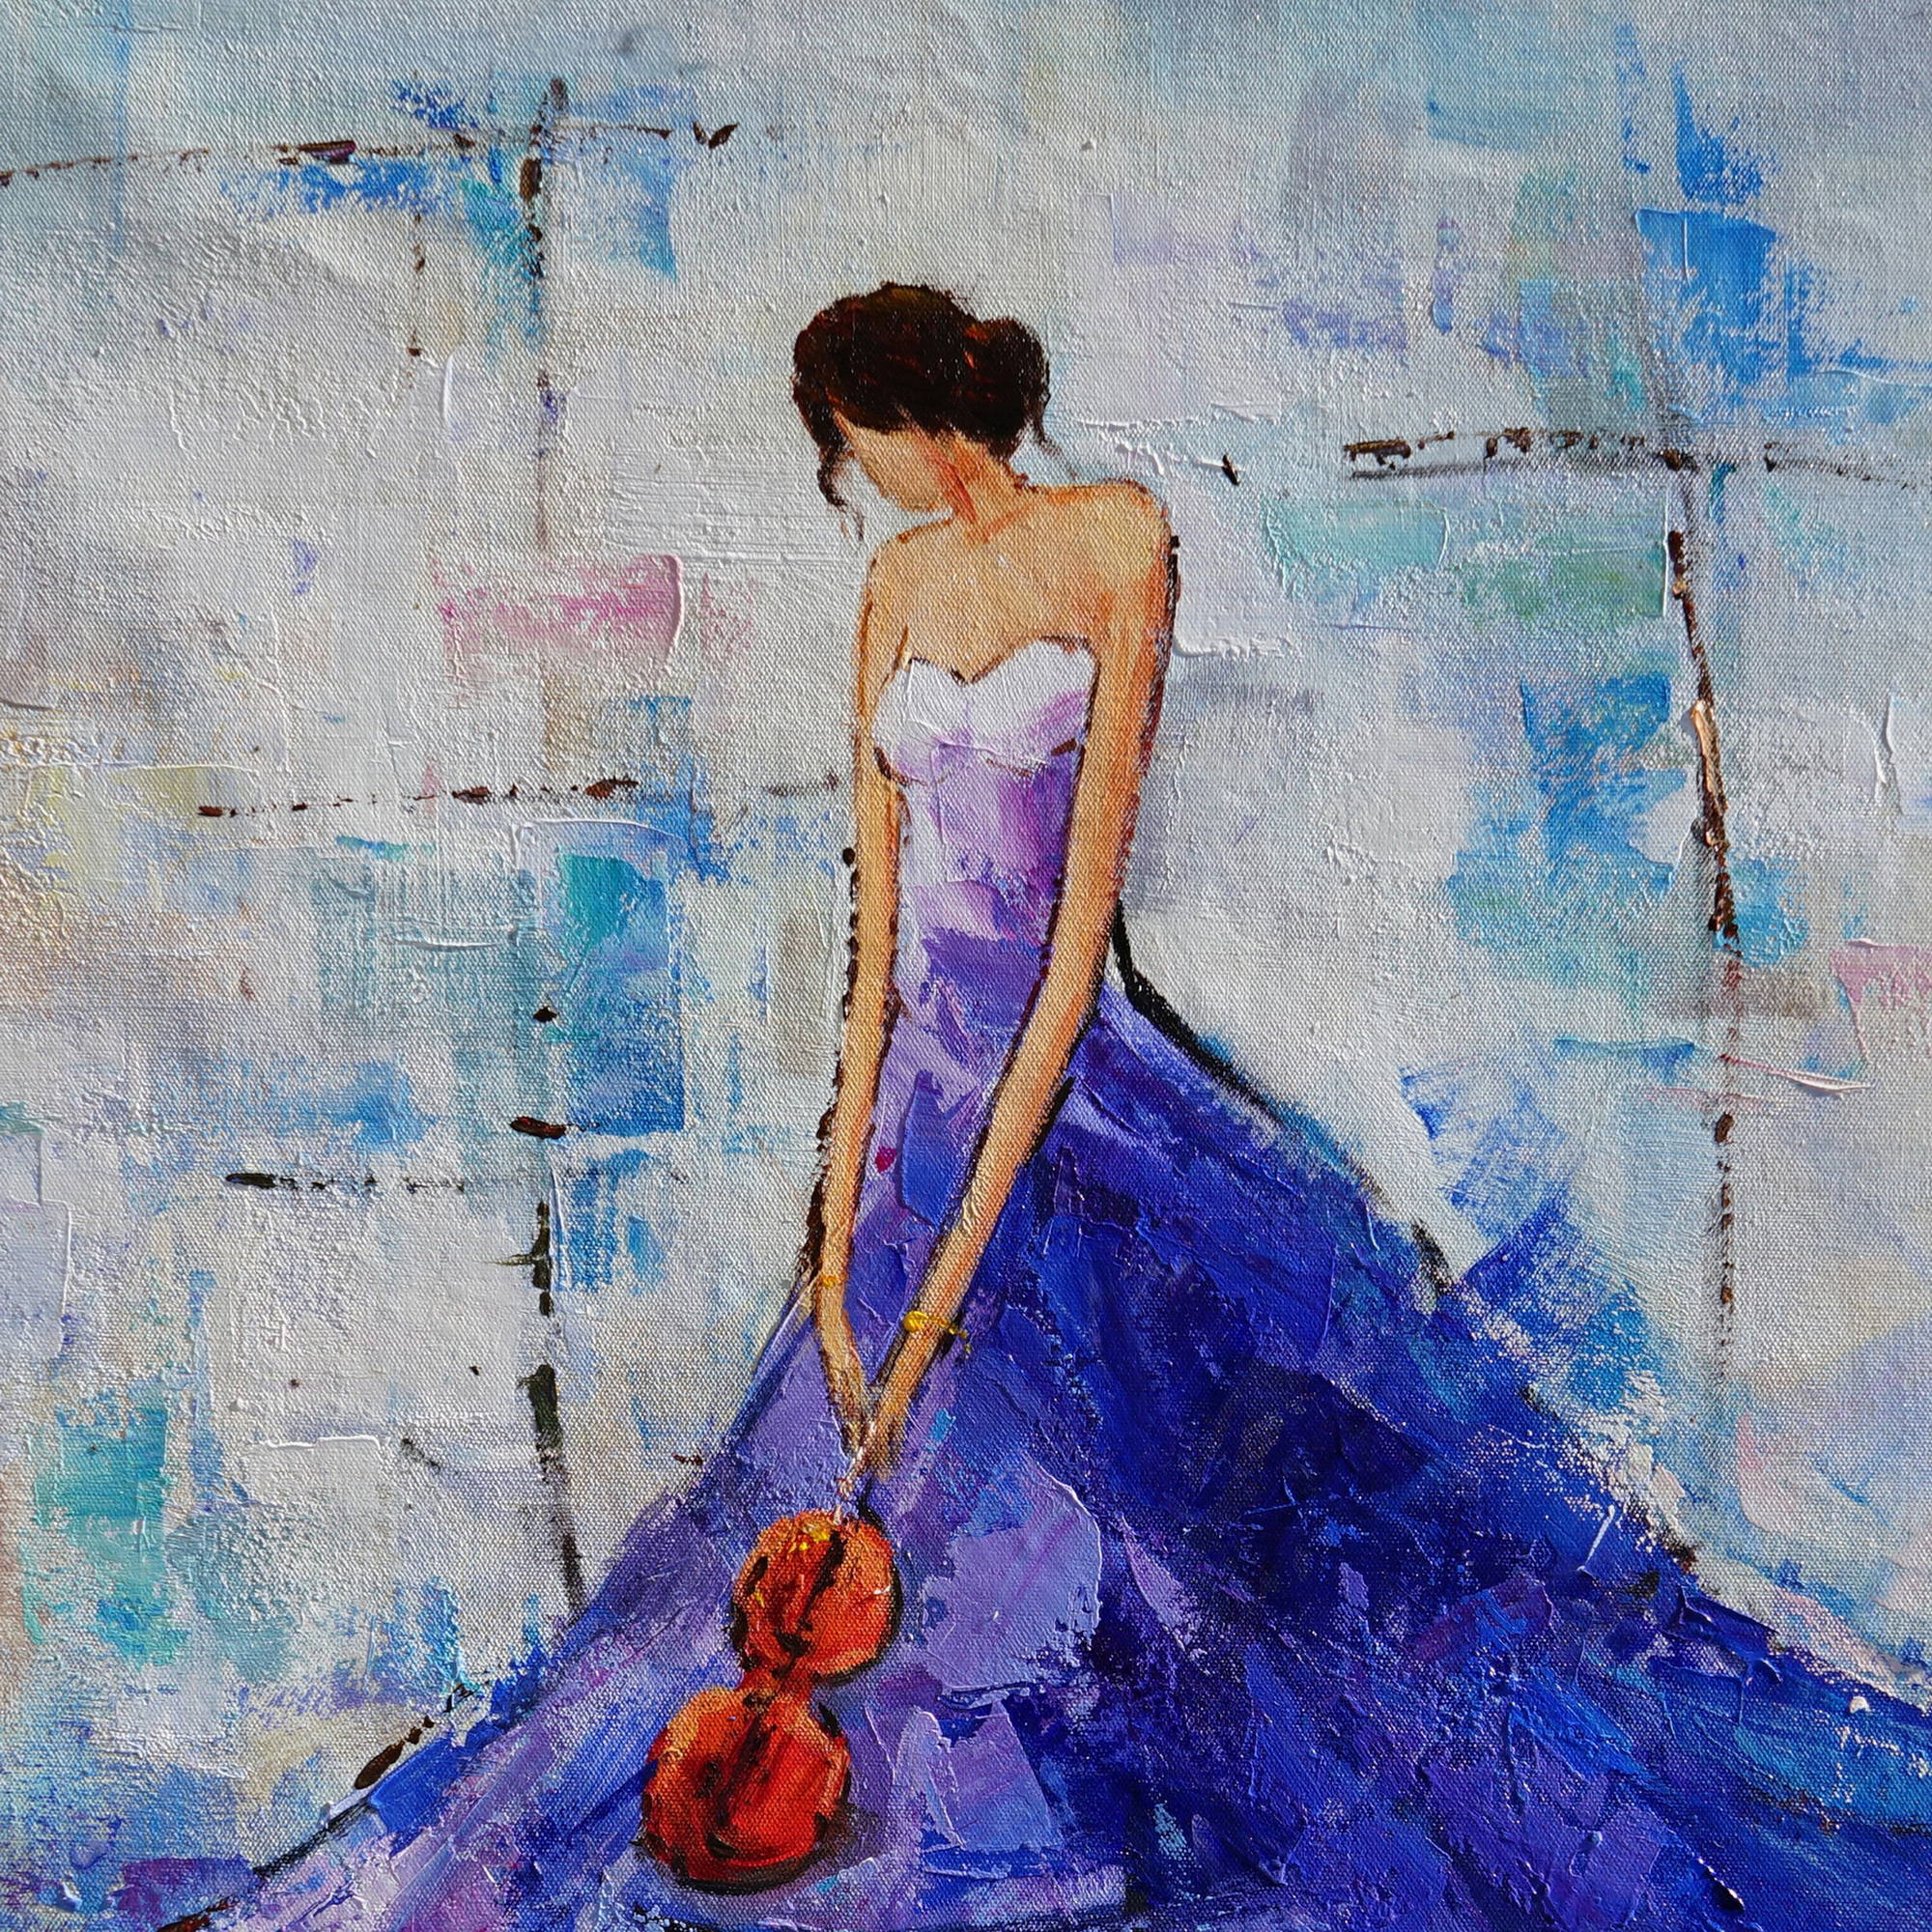 Femme élégante d'art moderne peinte à la main avec une robe bleue 80x120cm